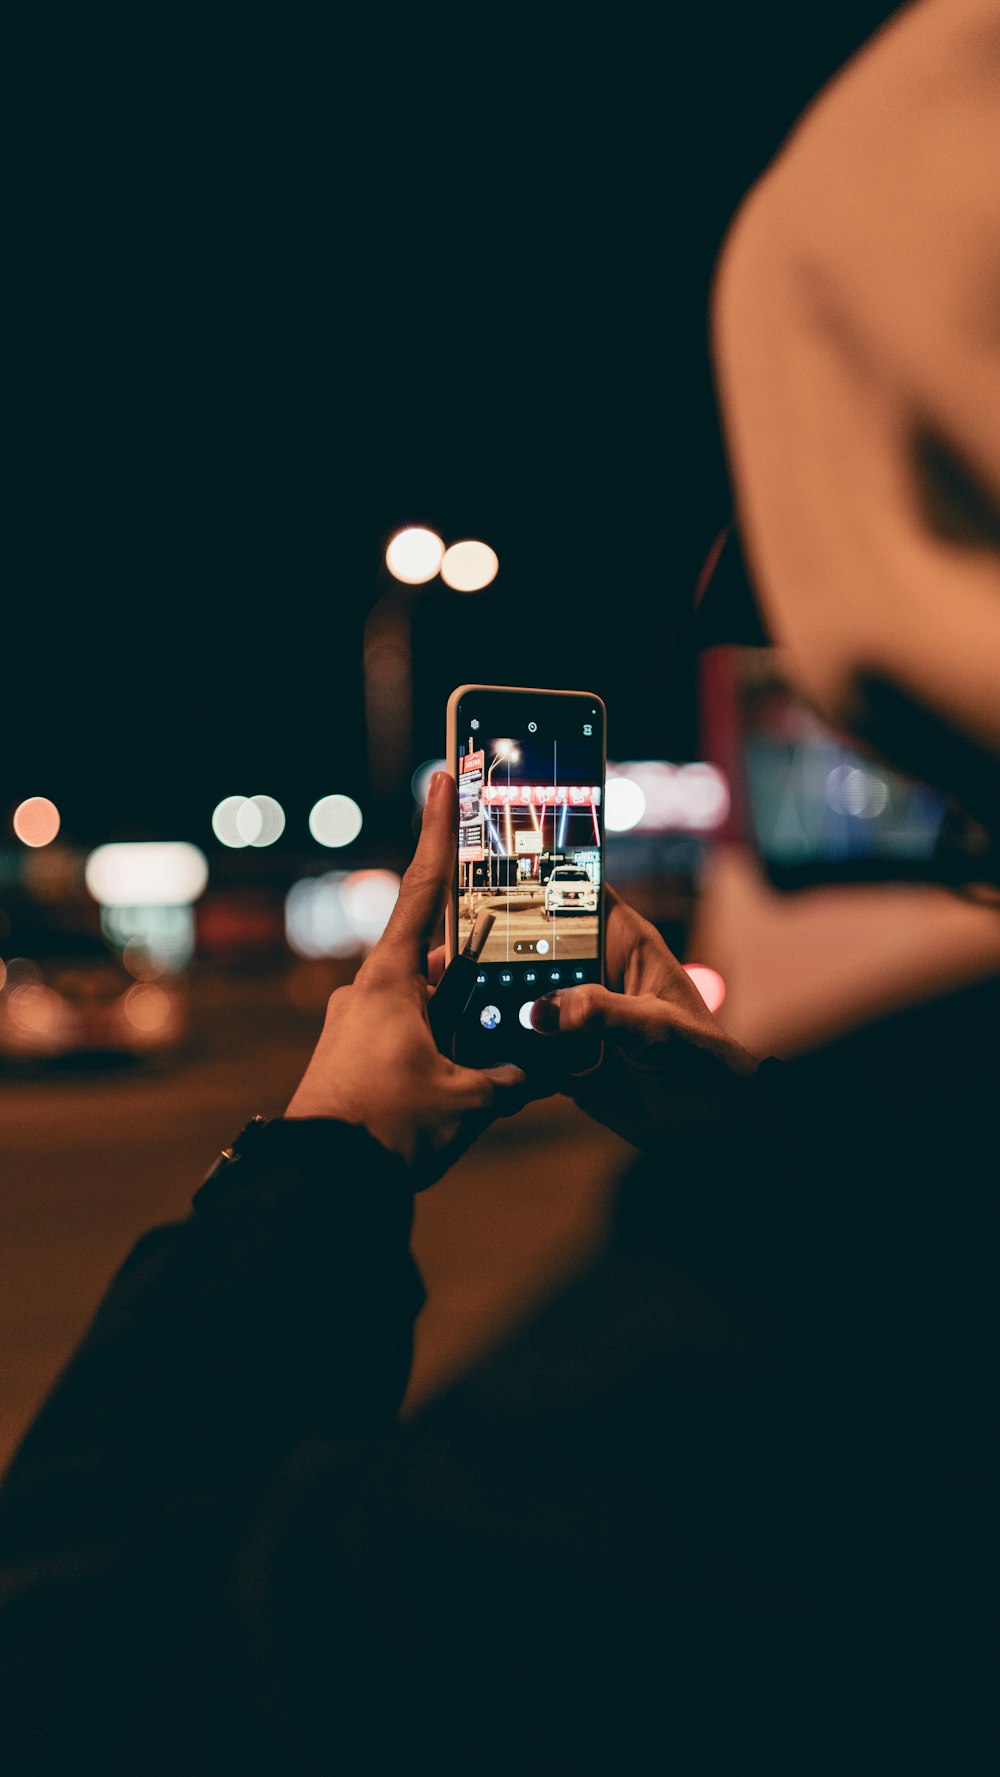 una persona tomando una foto con un teléfono celular